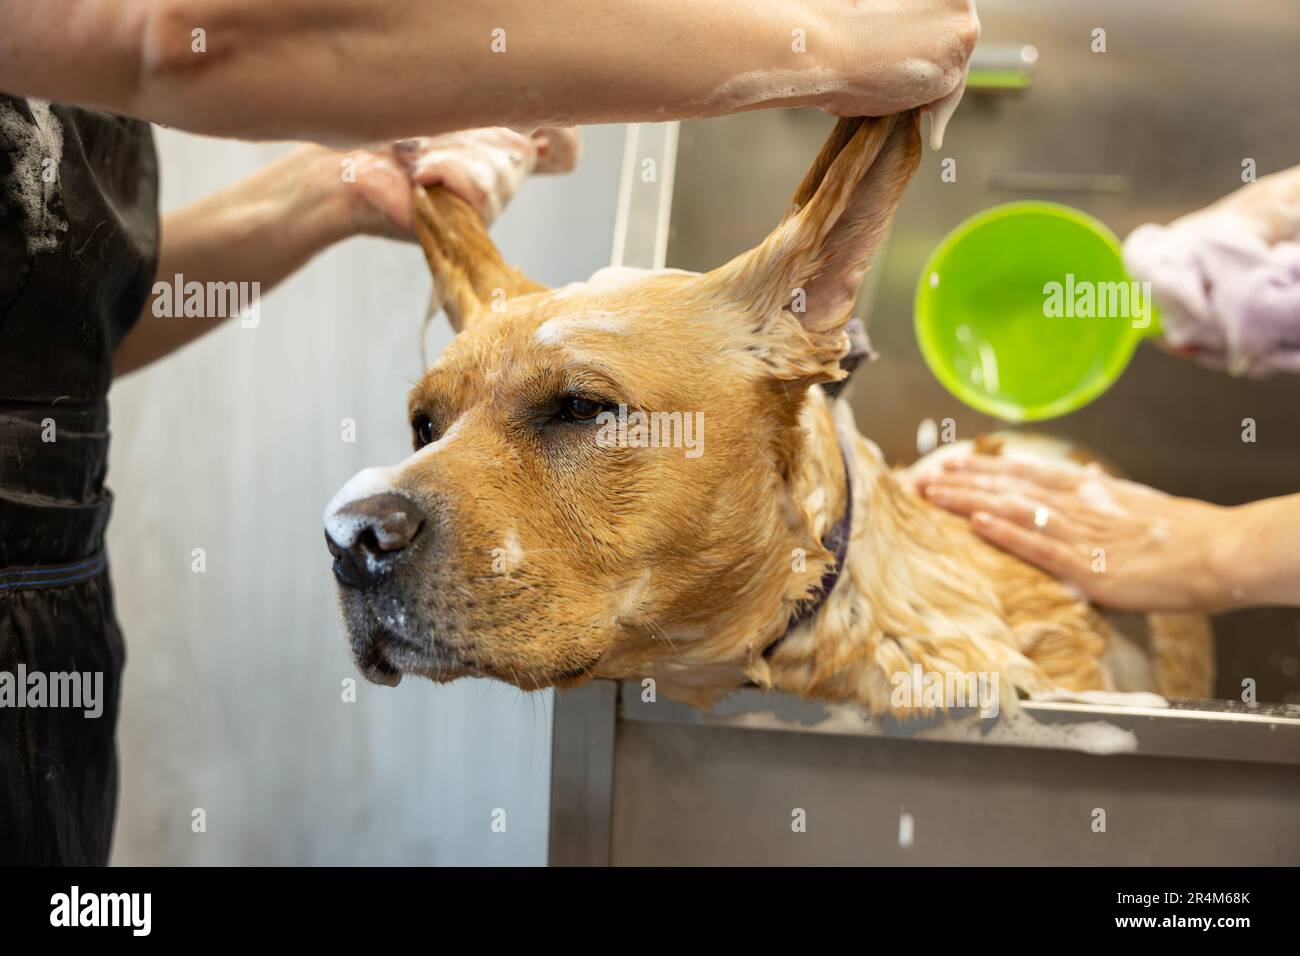 Les femmes groomers lavant doucement le chien Labradoodle avec du shampooing dans la salle de bains au salon de toilettage. Concept de soins et de toilettage pour chiens. Banque D'Images